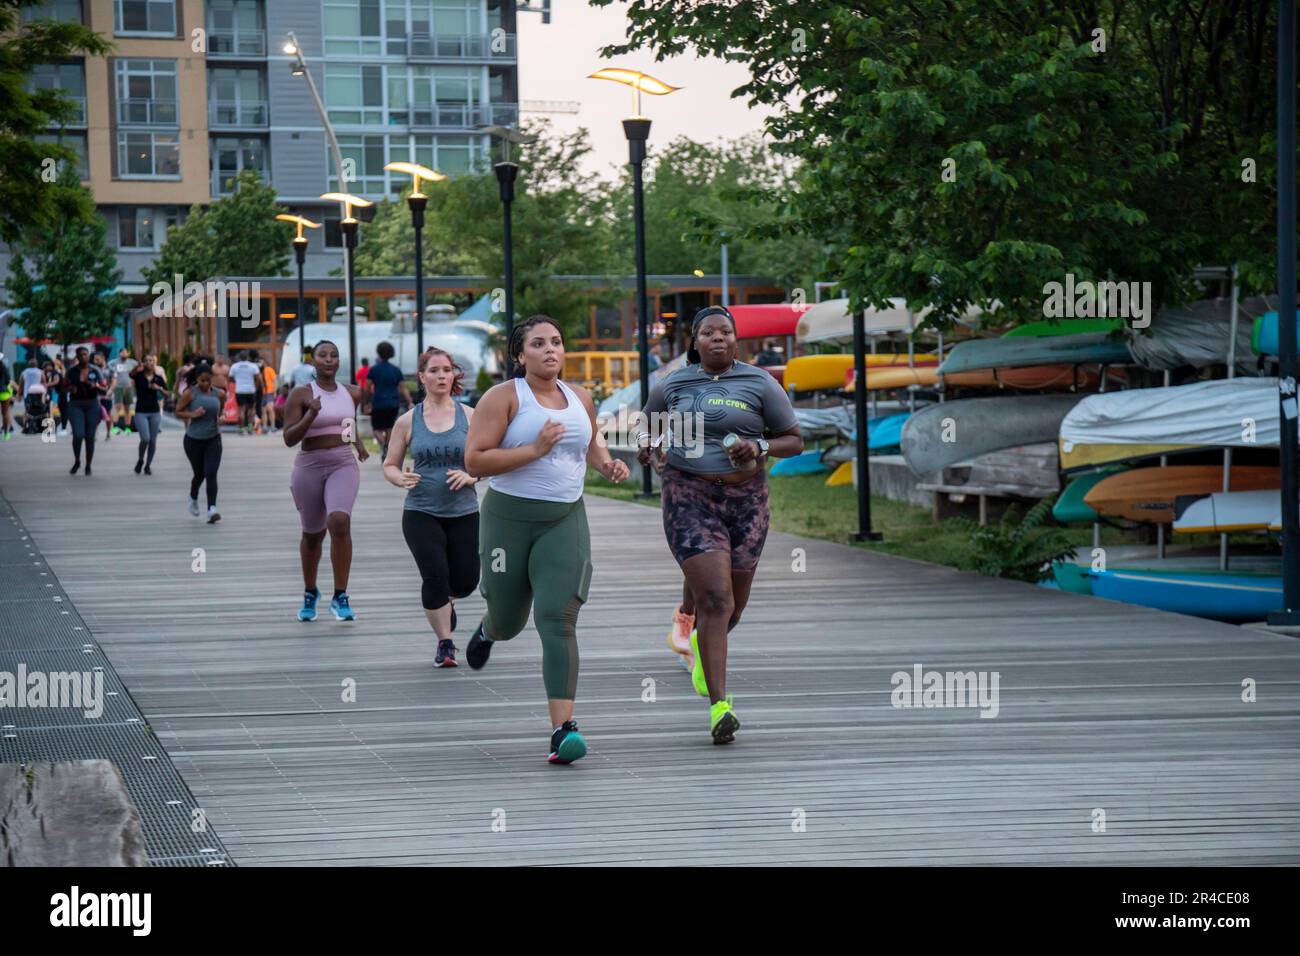 Washington, DC - Mitglieder der DC Run Crew laufen auf dem Anacostia Riverwalk Trail. Stockfoto